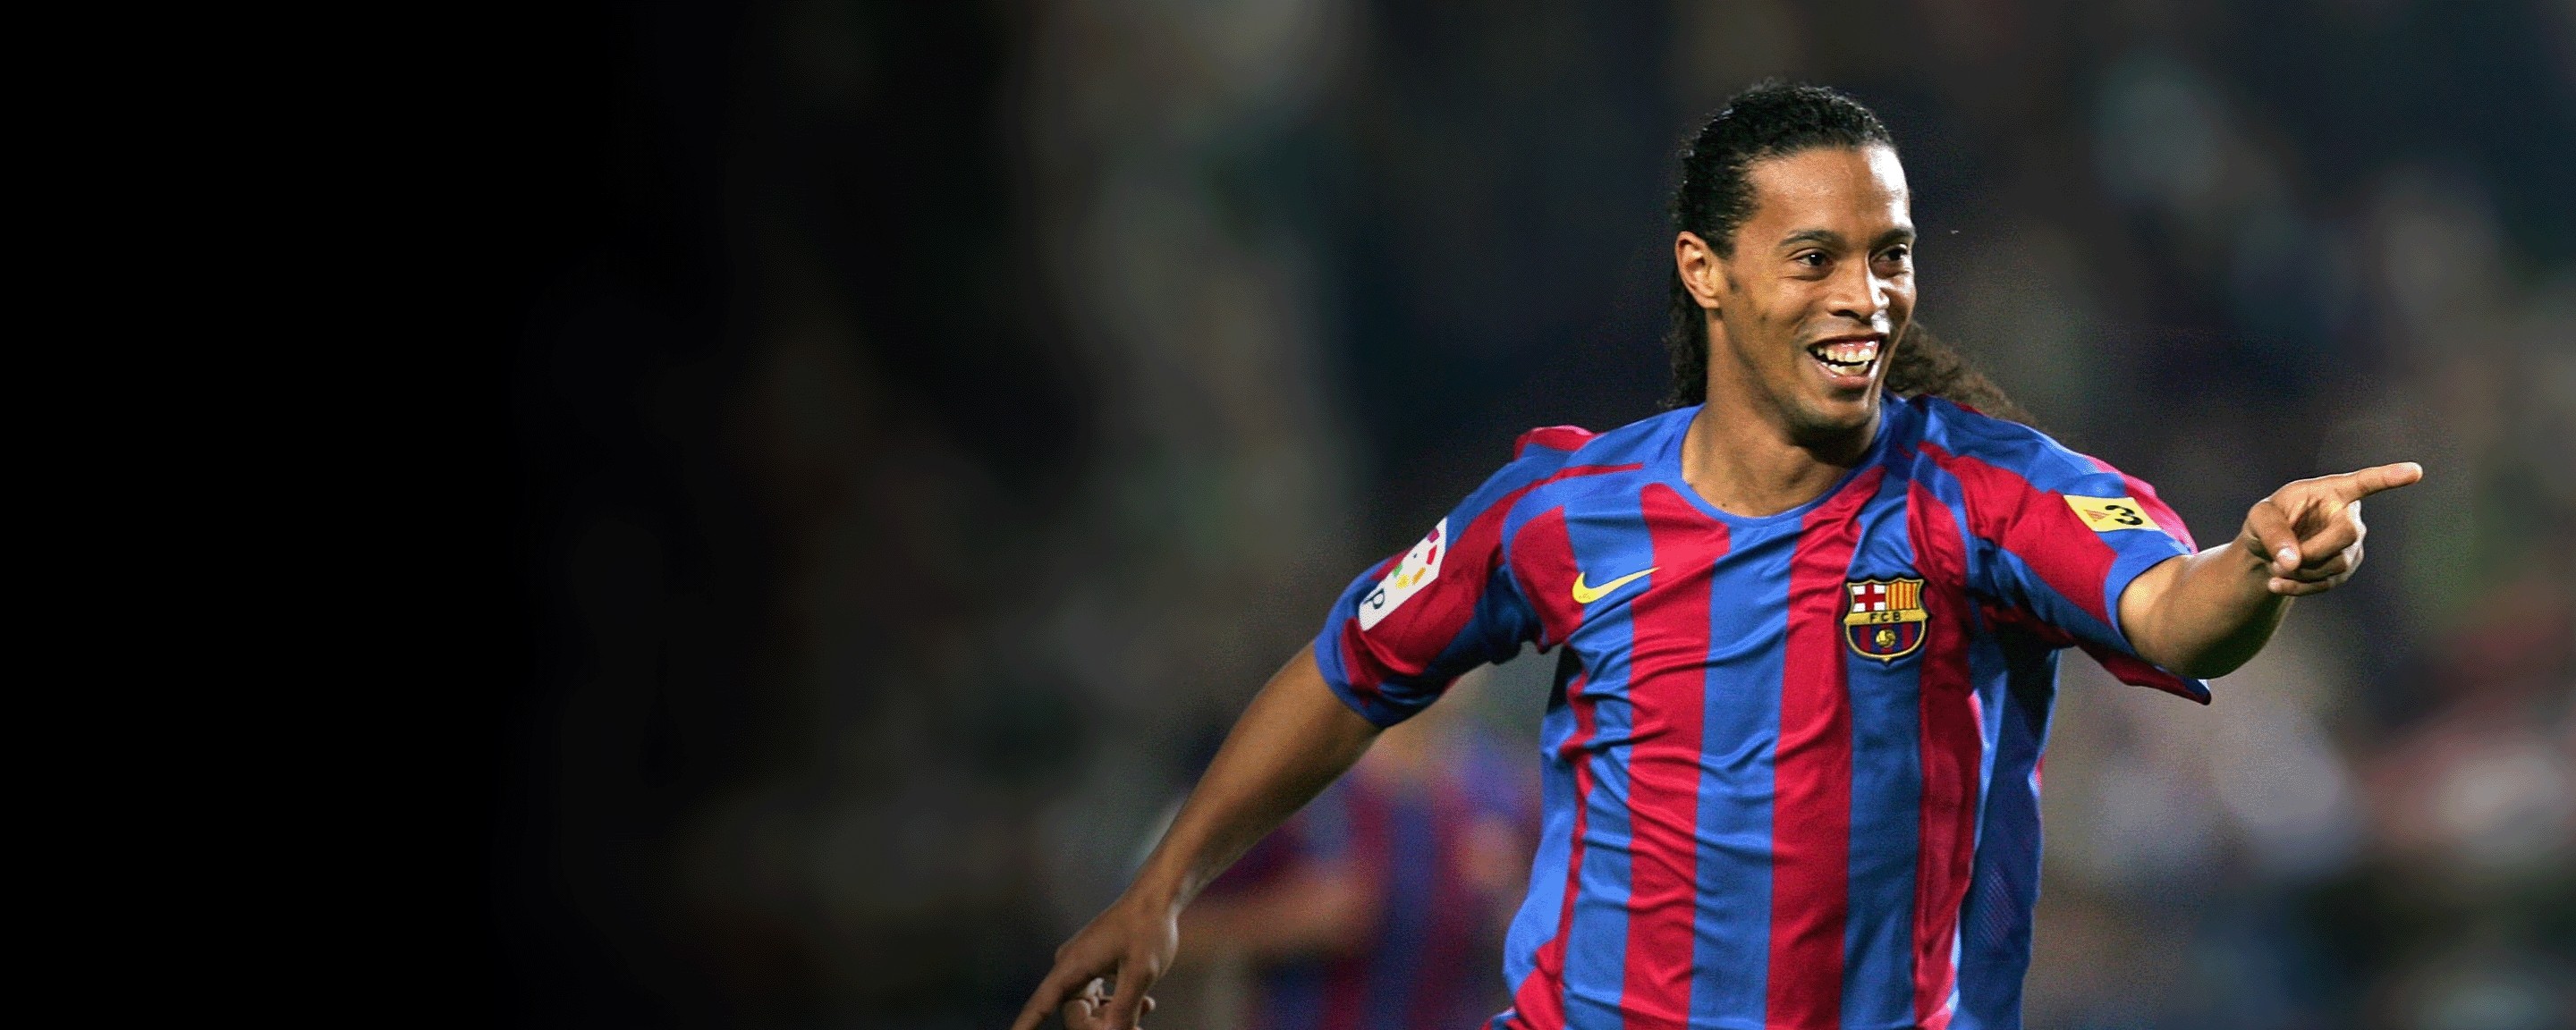 Ronaldinho Barcelona Signed Home Shirt